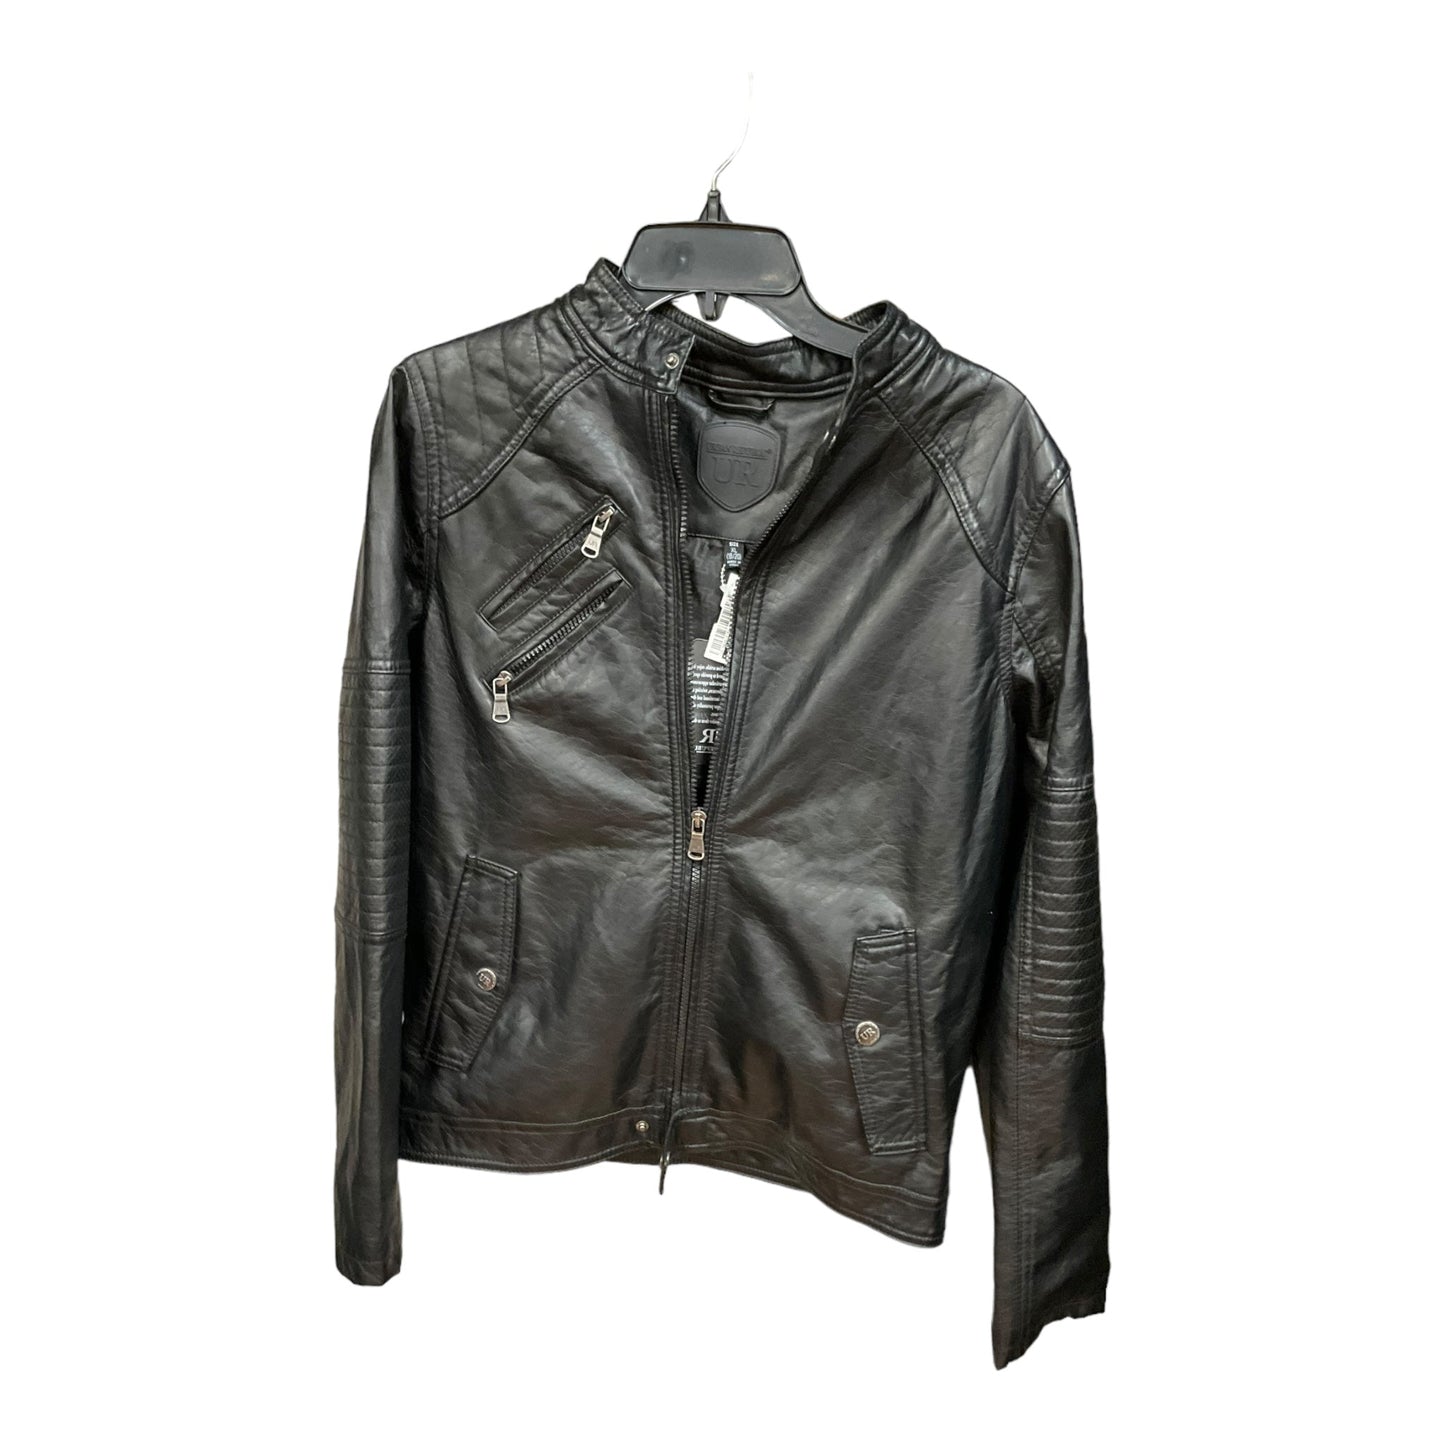 Black Jacket Moto Clothes Mentor, Size Xl